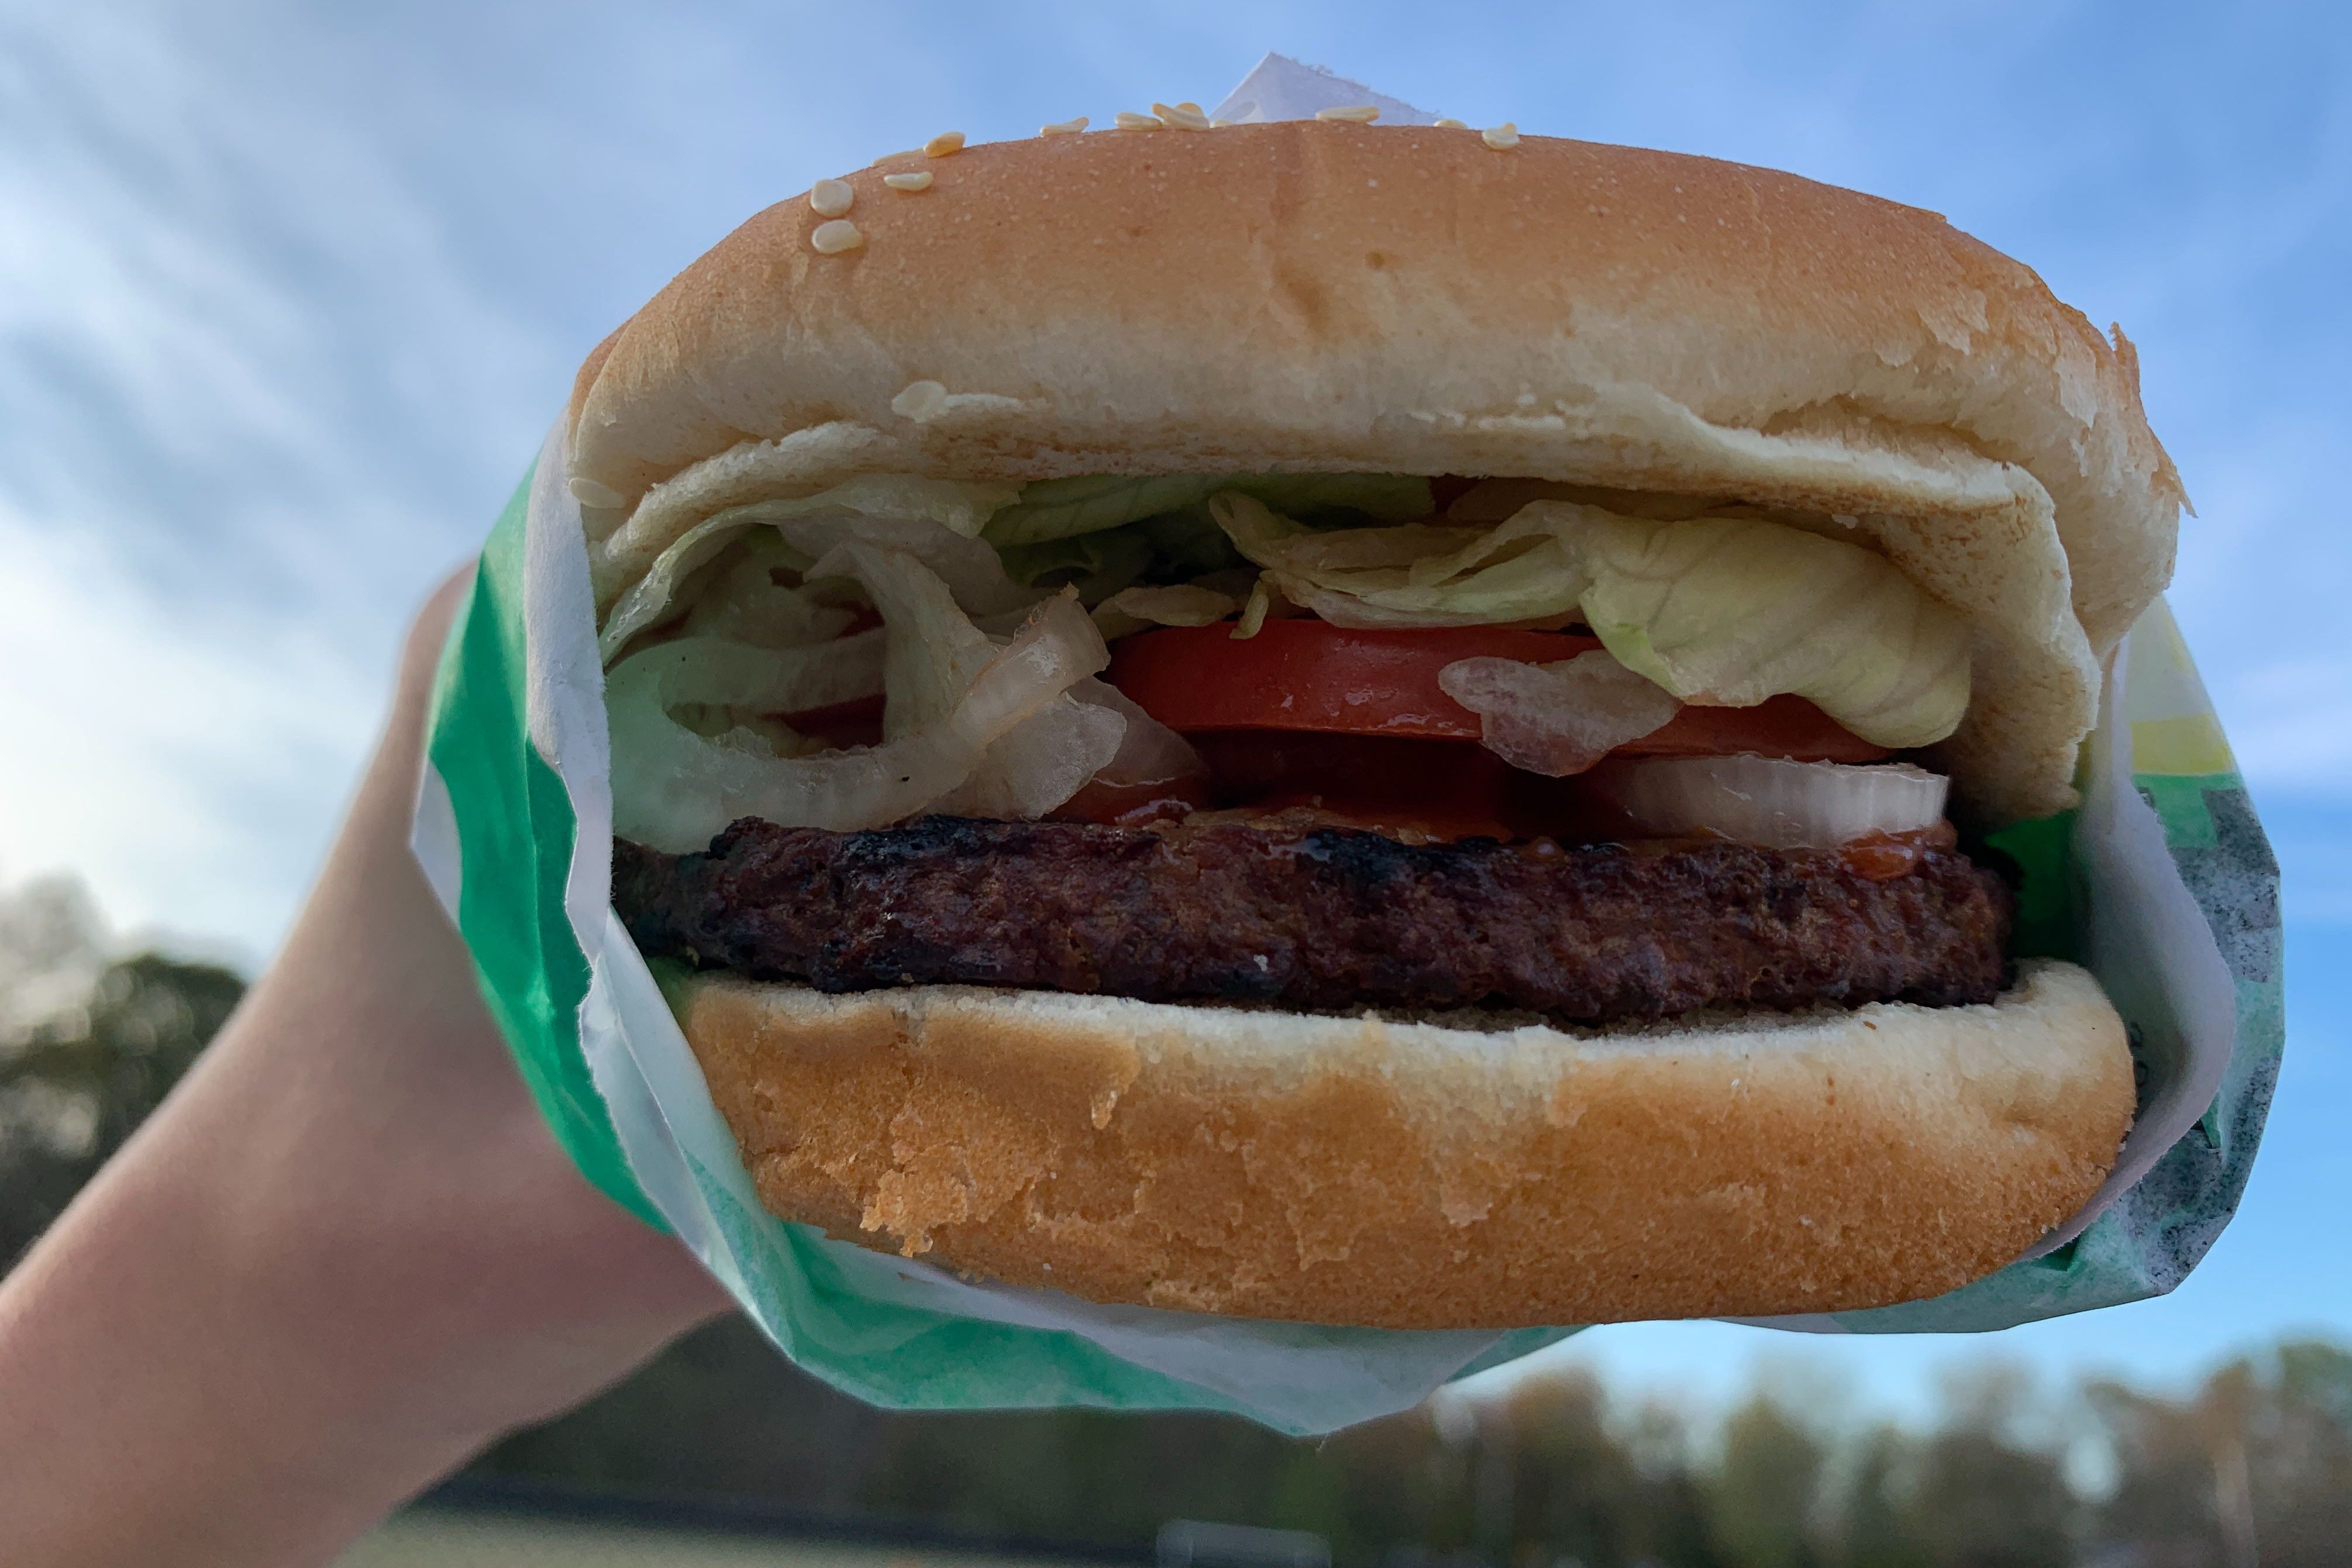 A life-long vegetarian and a loyal carnivore review Burger King's